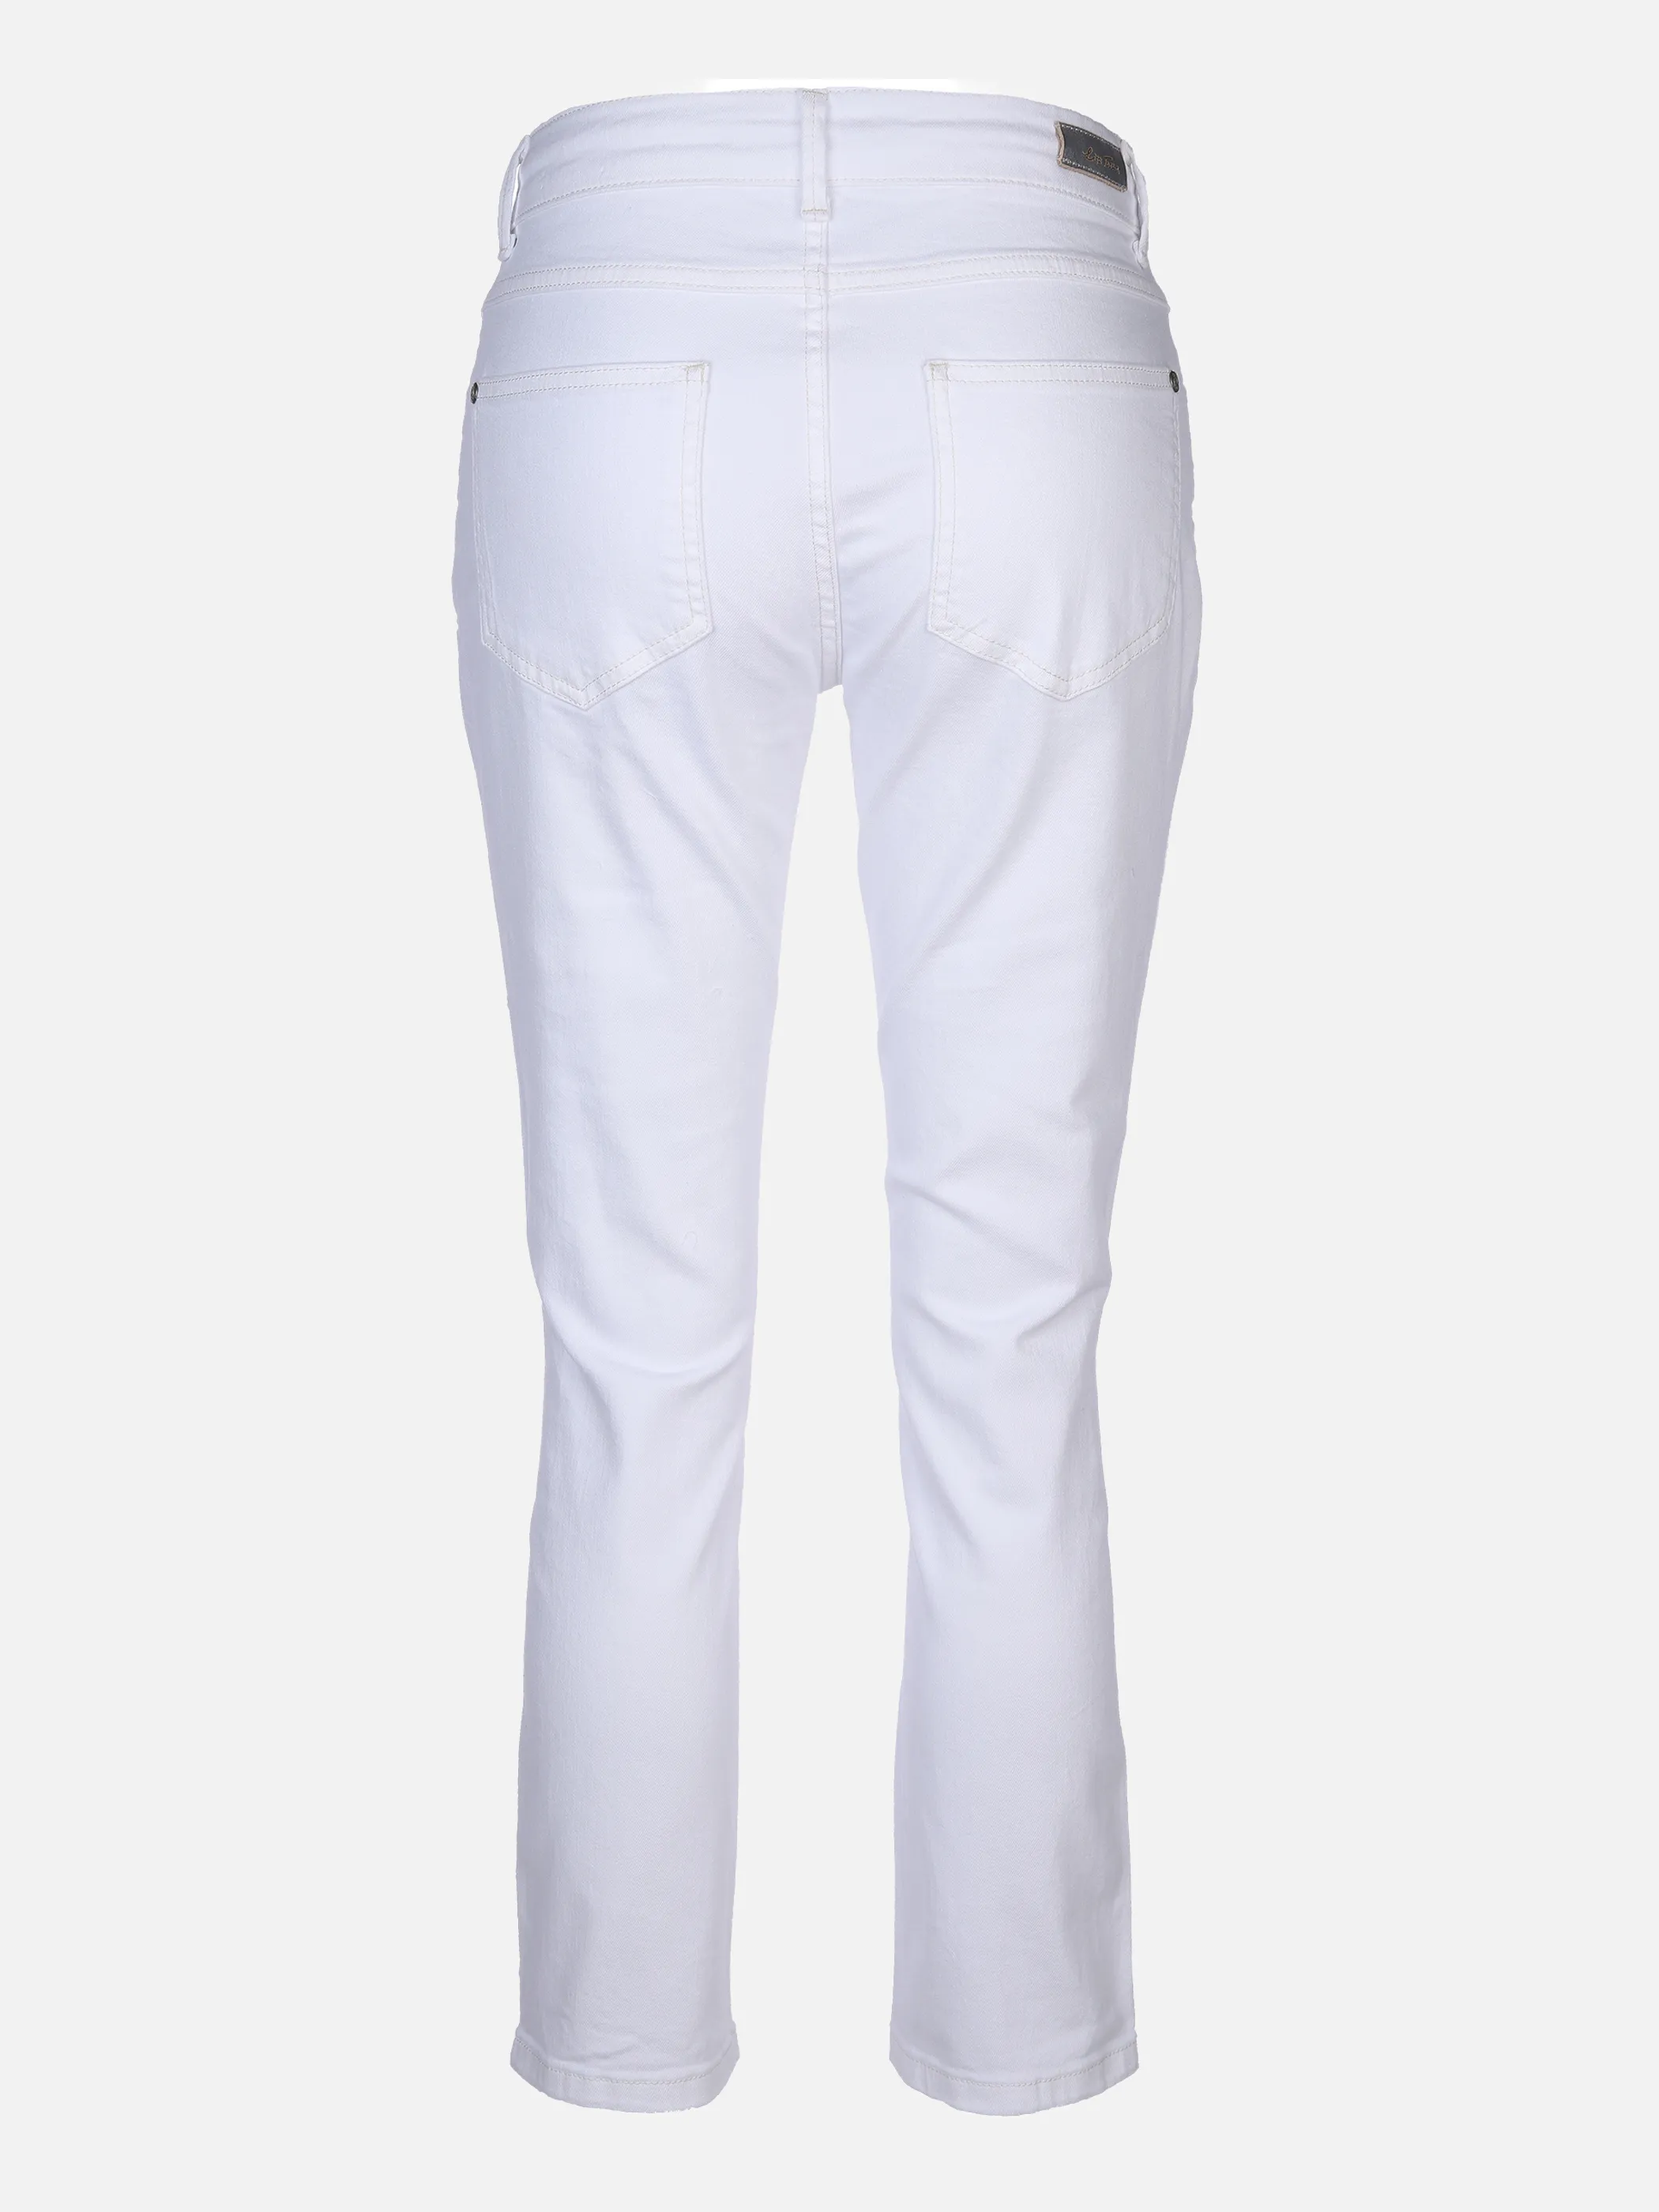 Lisa Tossa Da-Jeans m. Bindeband Weiß 862059 OFF WHITE 2